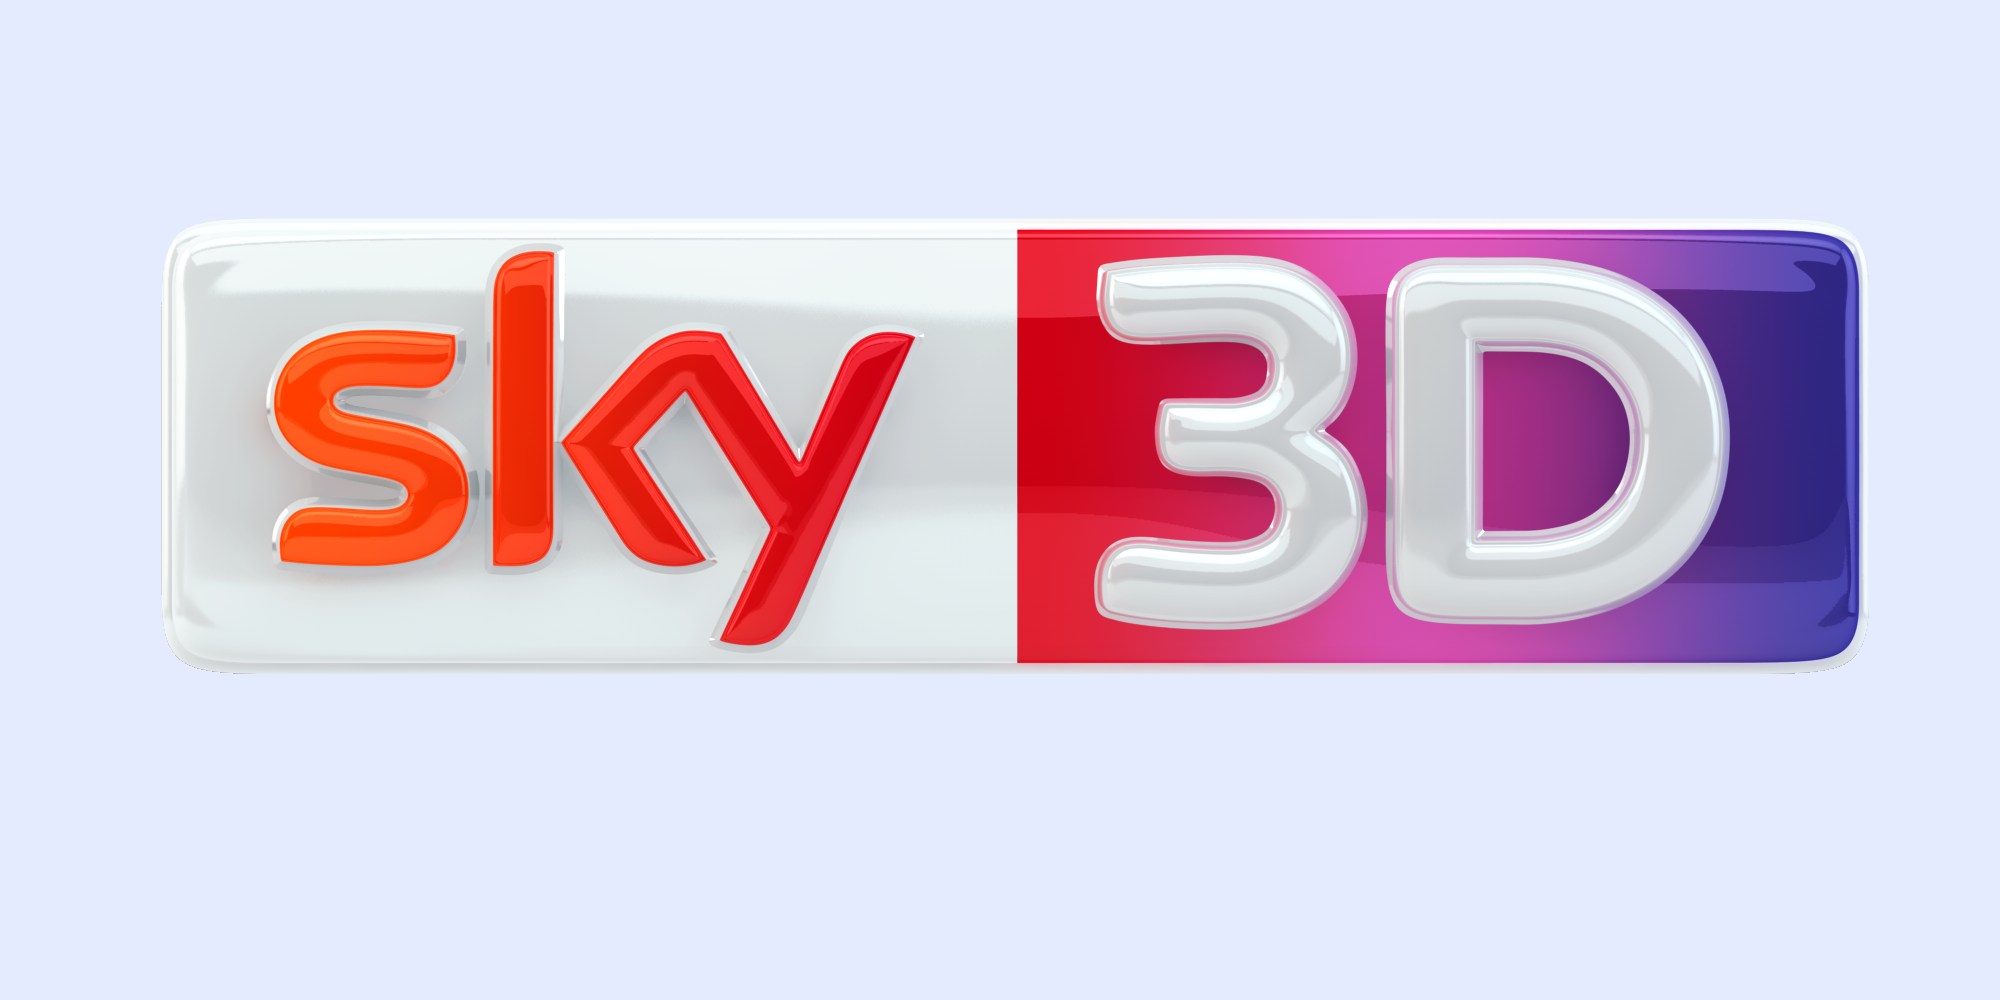 Sky 3D